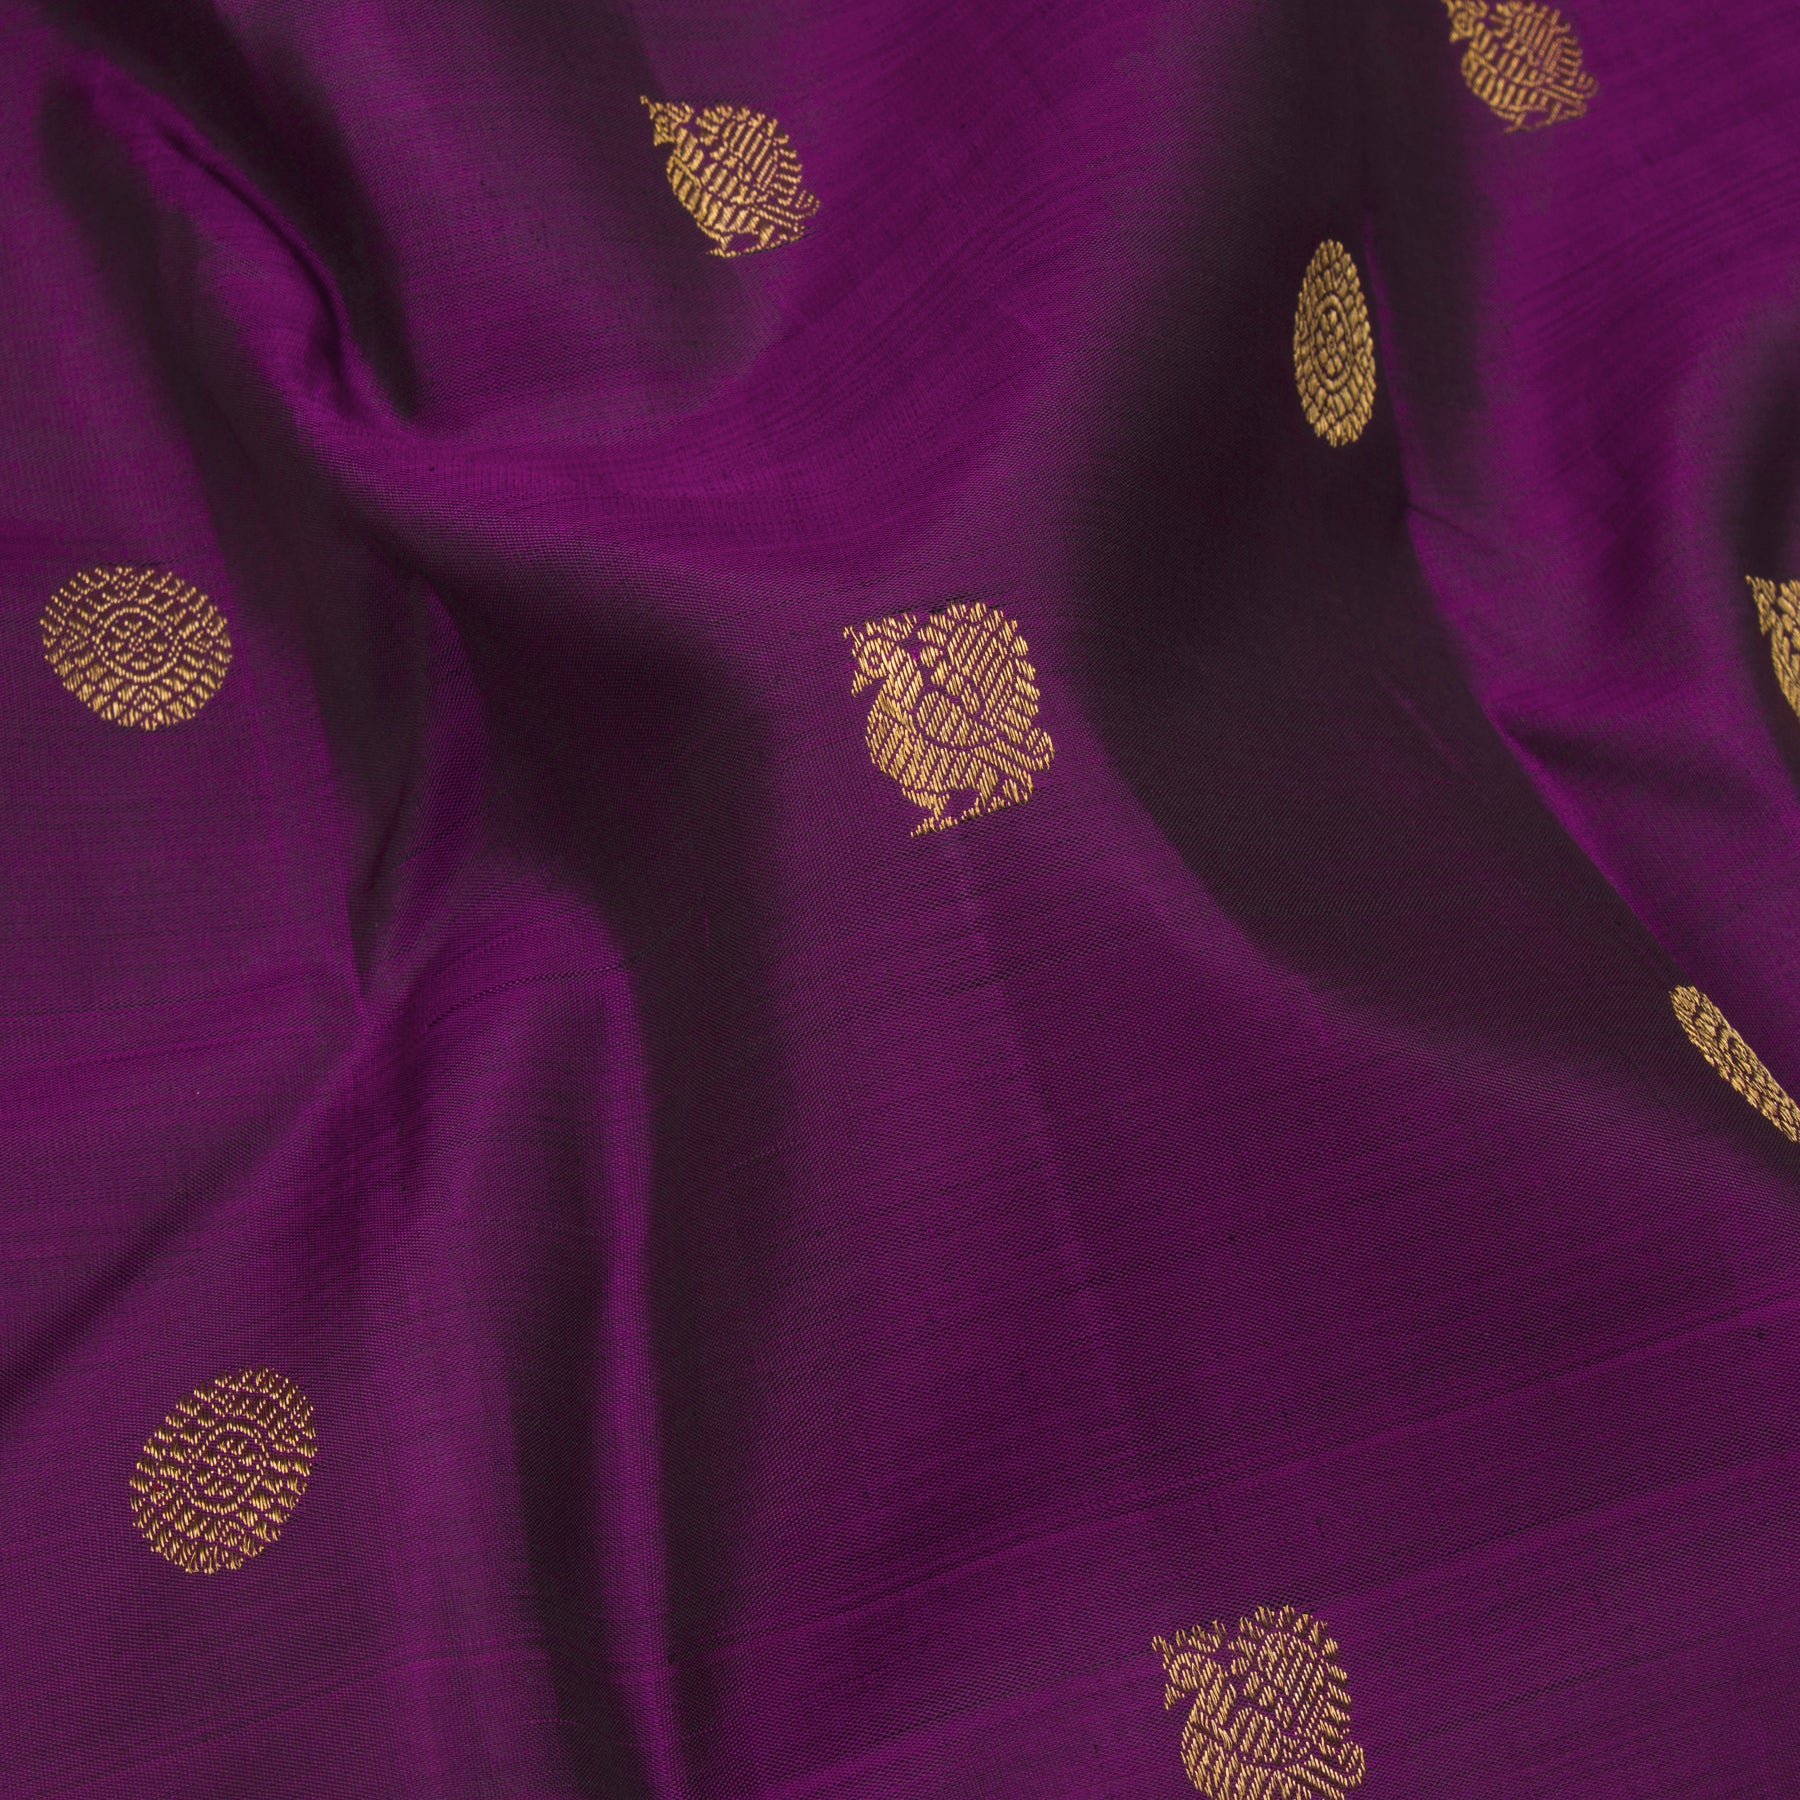 Kanakavalli Kanjivaram Silk Sari 23-595-HS001-12135 - Fabric View